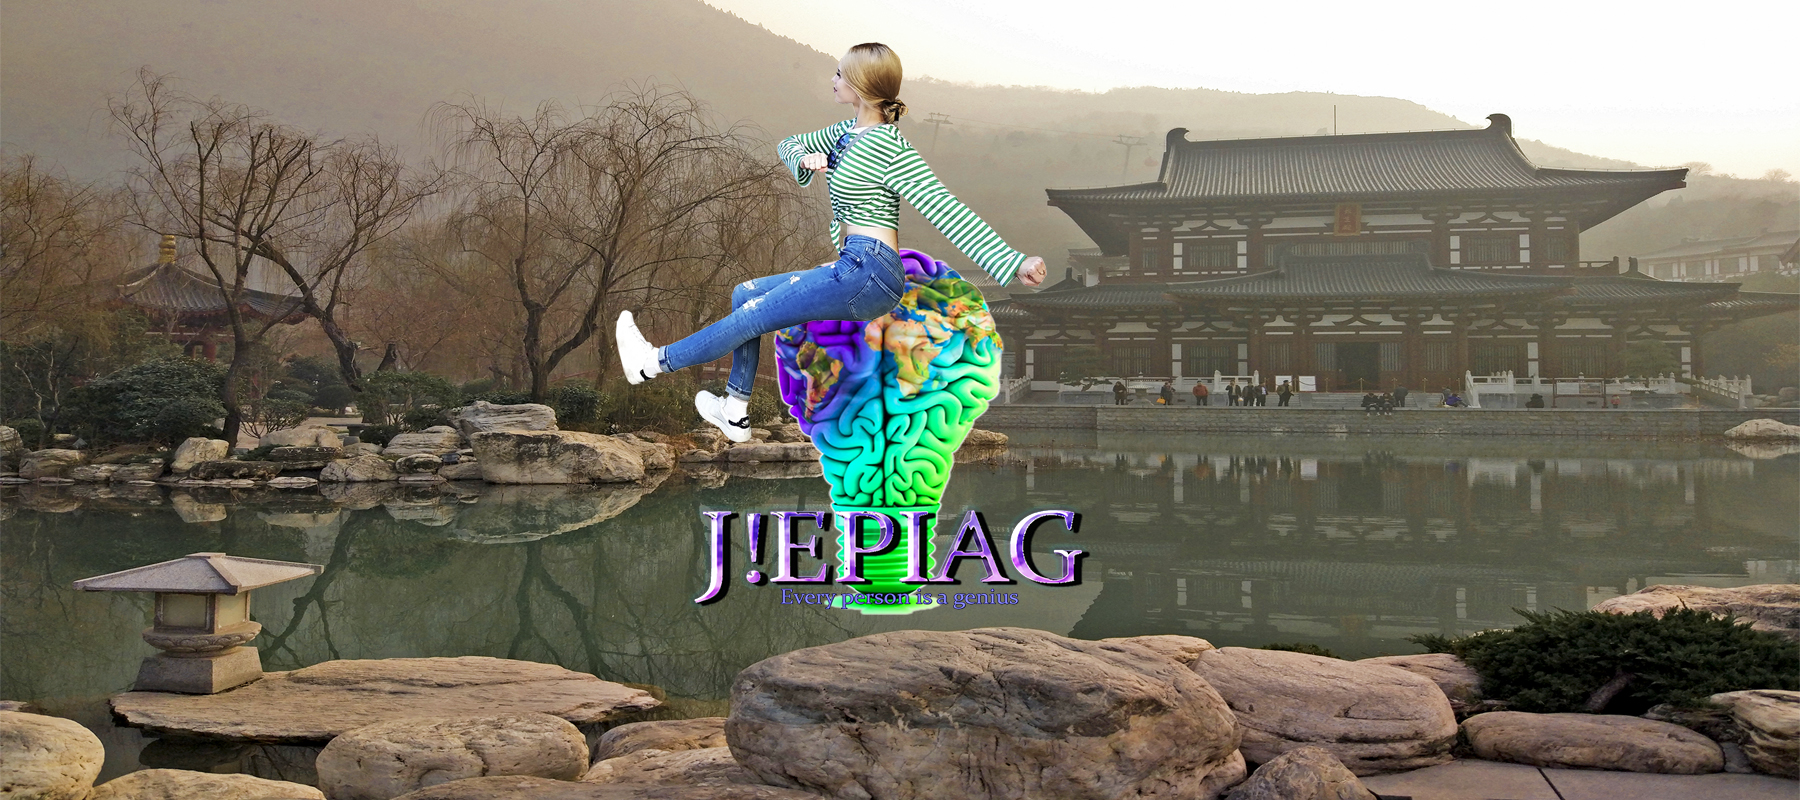 JEPIAG , jepiag , journal every person is a genius , Блог о путешествиях и психологии , самостоятельные путешествия, осознанное путешествие, психолог Киев, Валерия Моденко, Китай